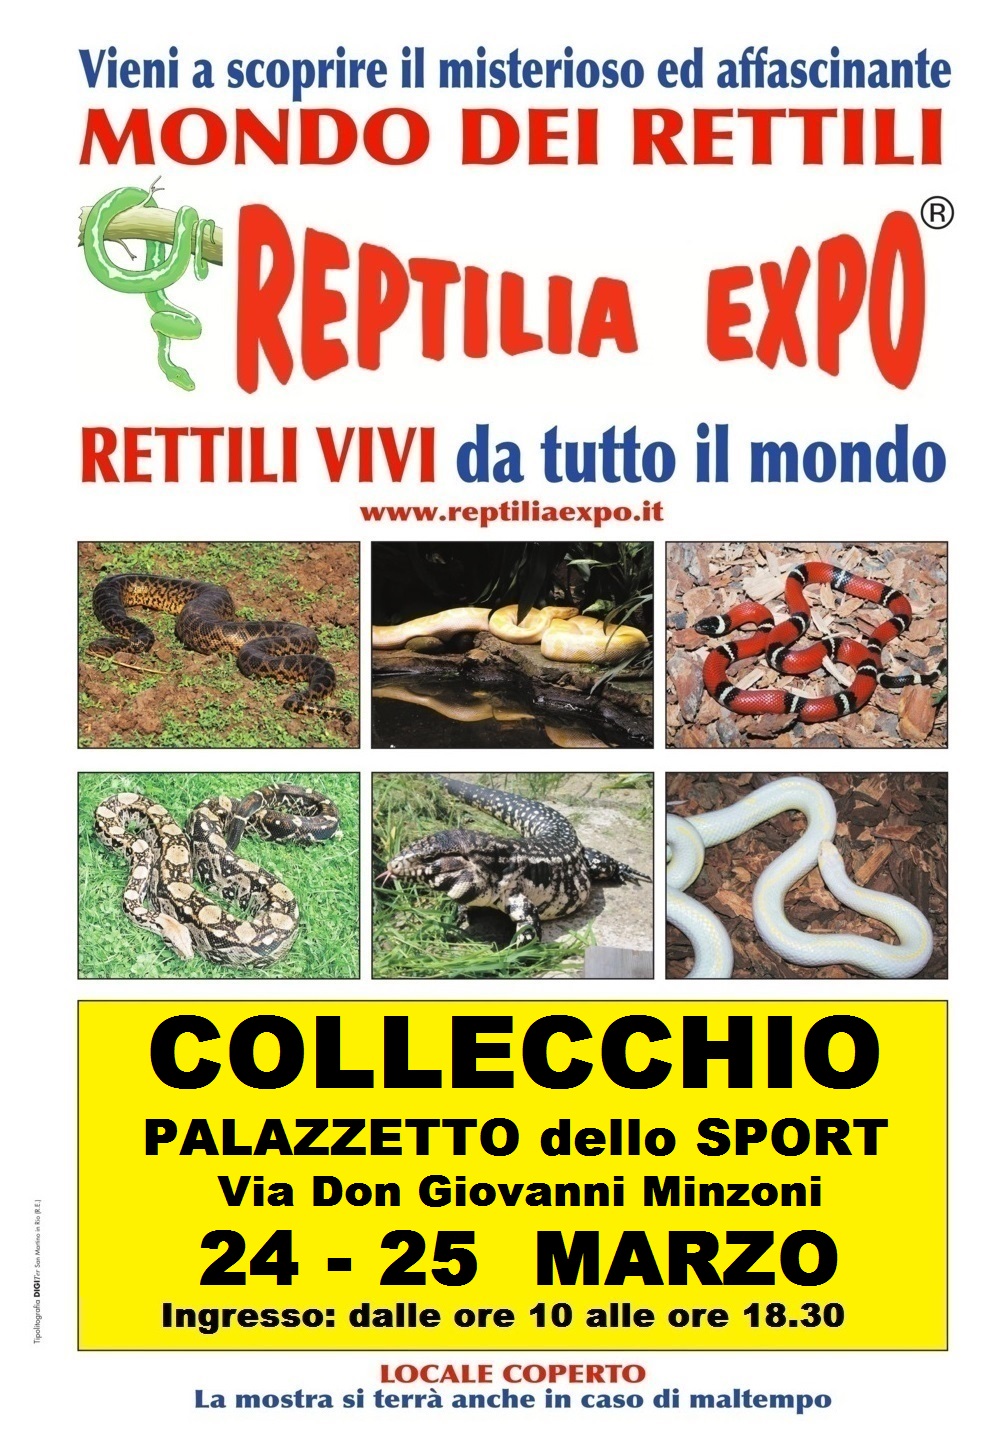 REPTILIA EXPO: l'affascinante mondo dei rettili al Palazzetto dello Sport di Collecchio - Parma